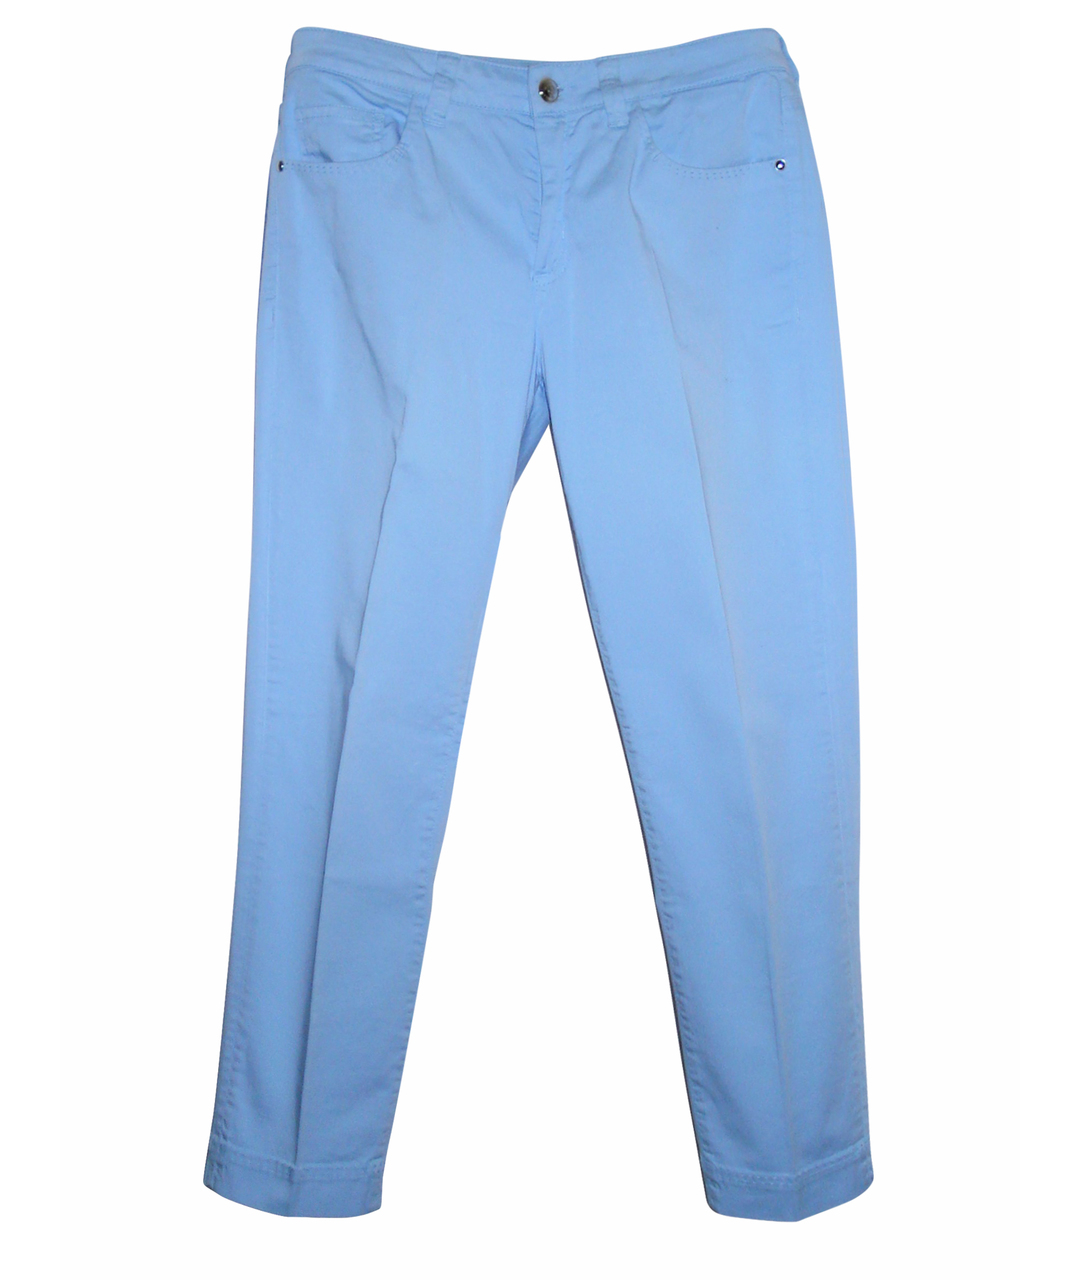 CERRUTI 1881 Голубые хлопковые брюки узкие, фото 1